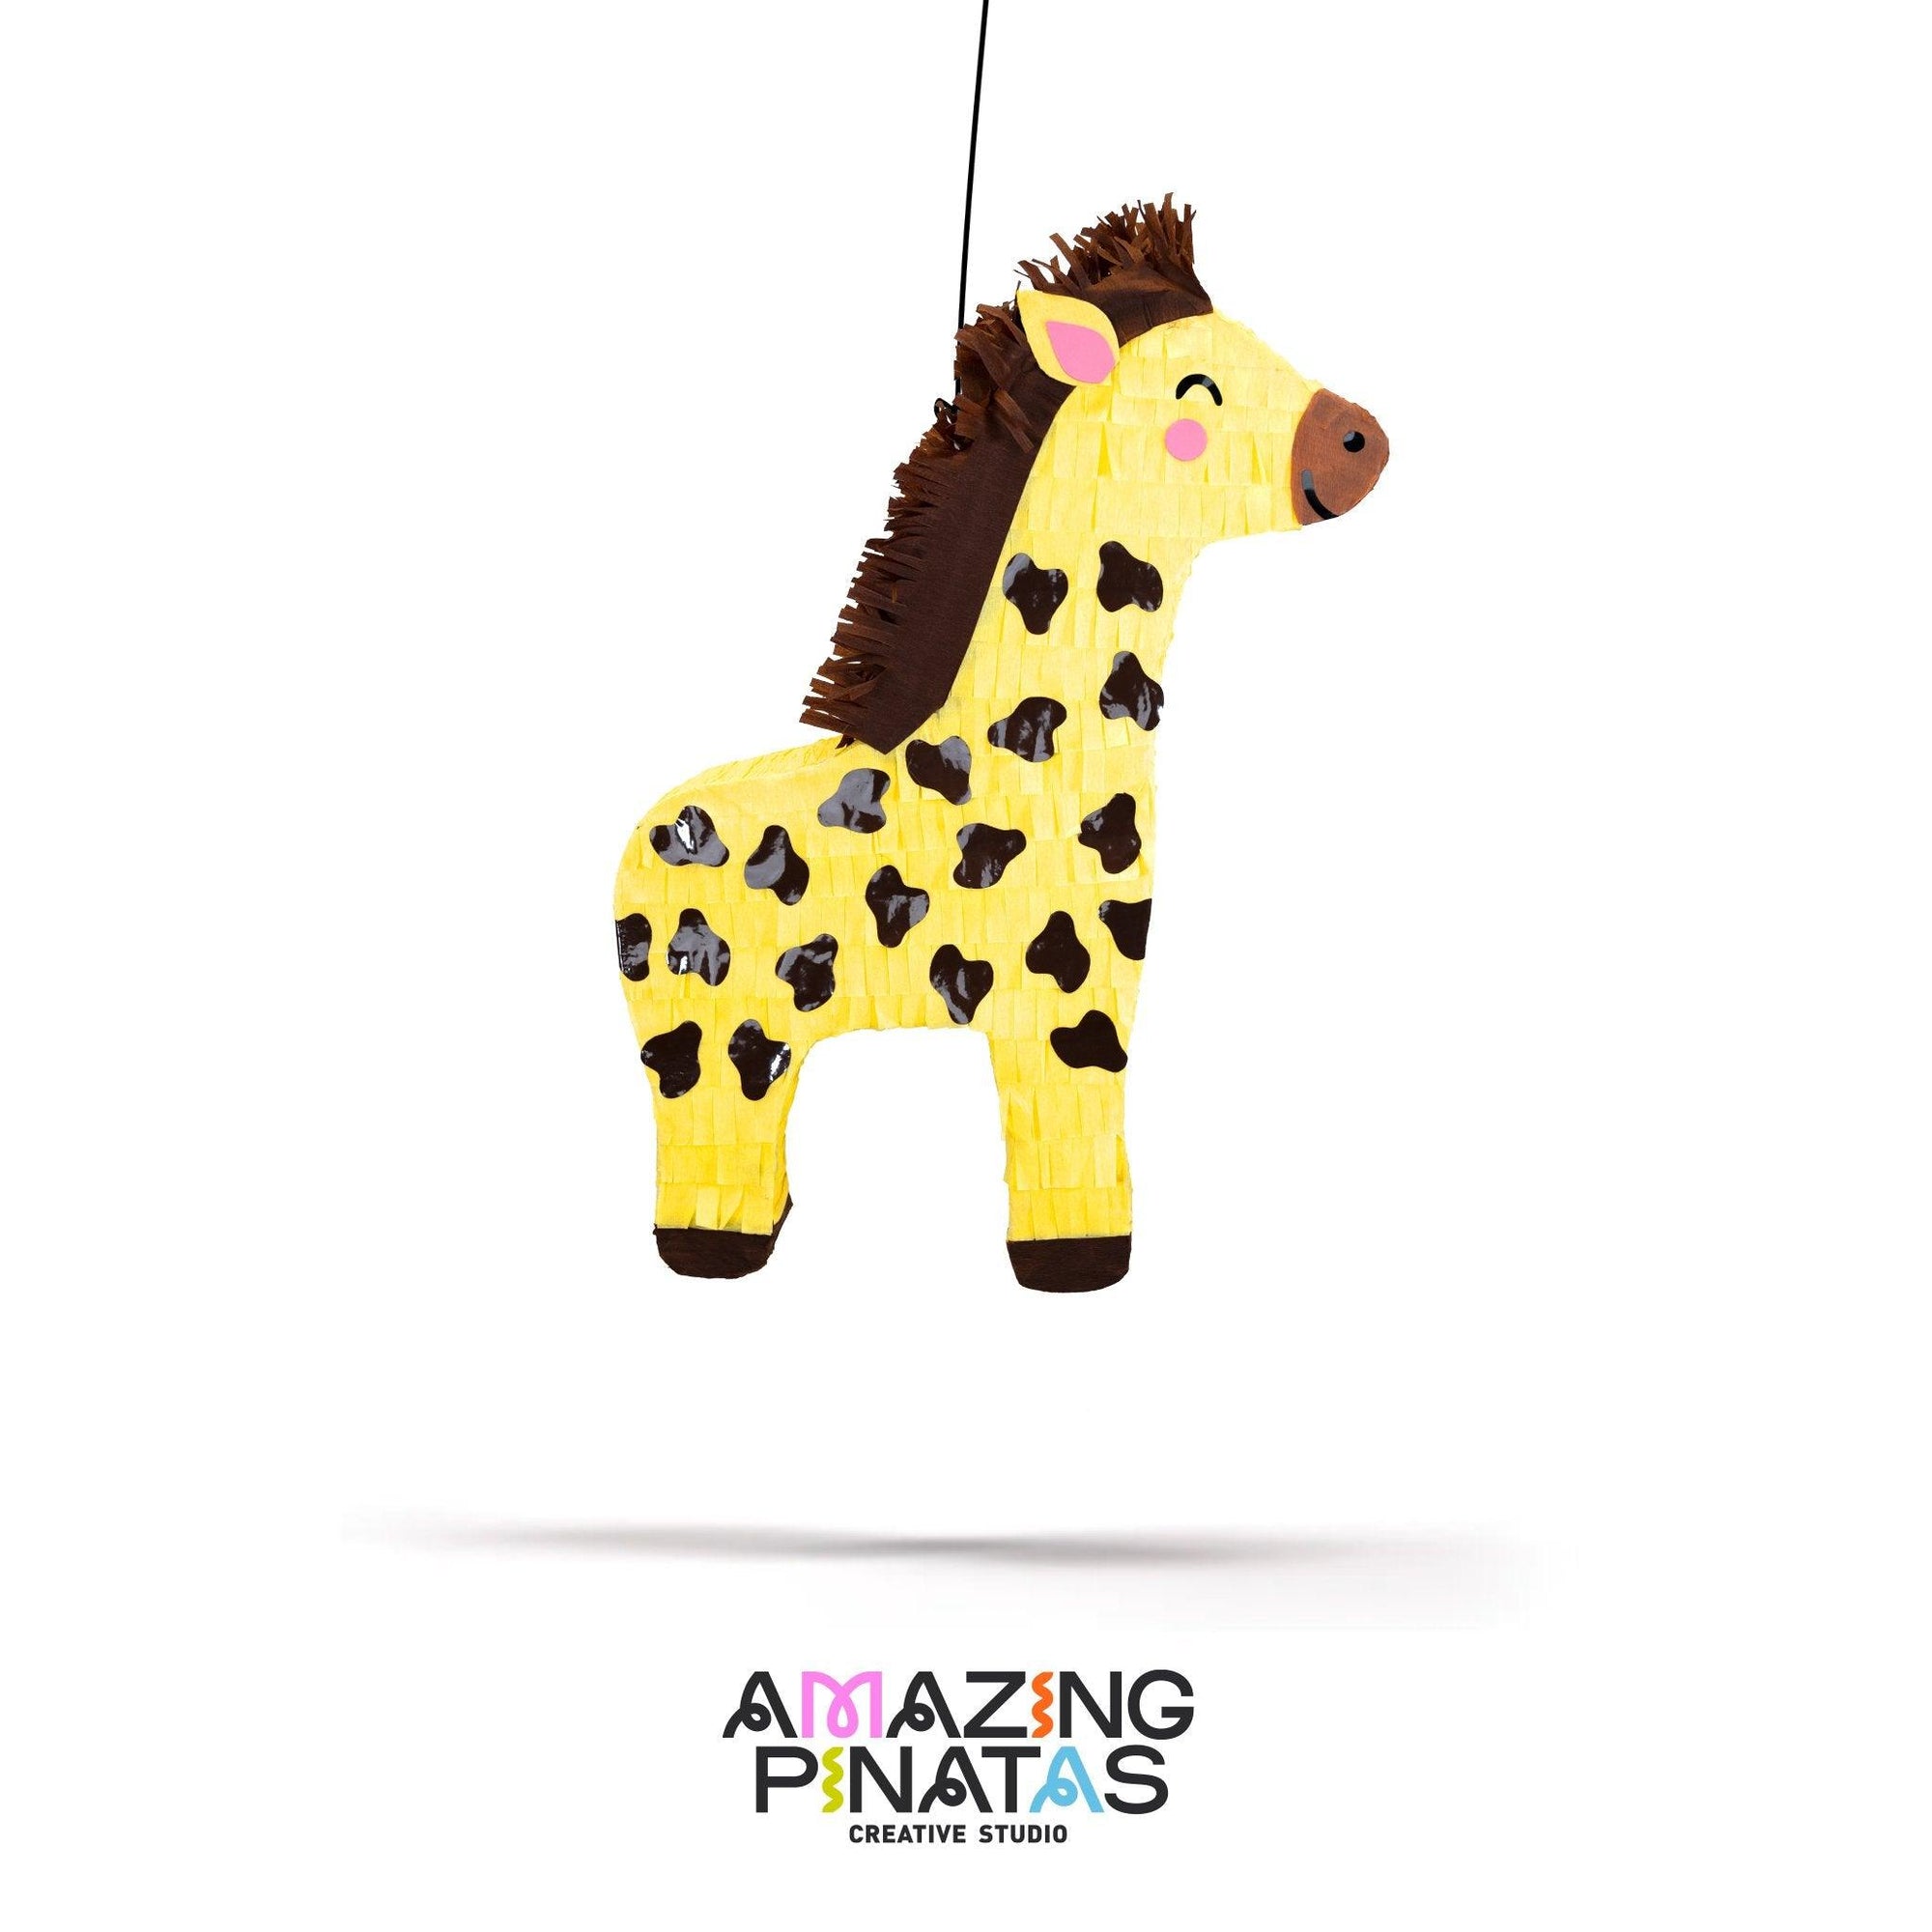 Giraffe Pinata | Amazing Pinatas